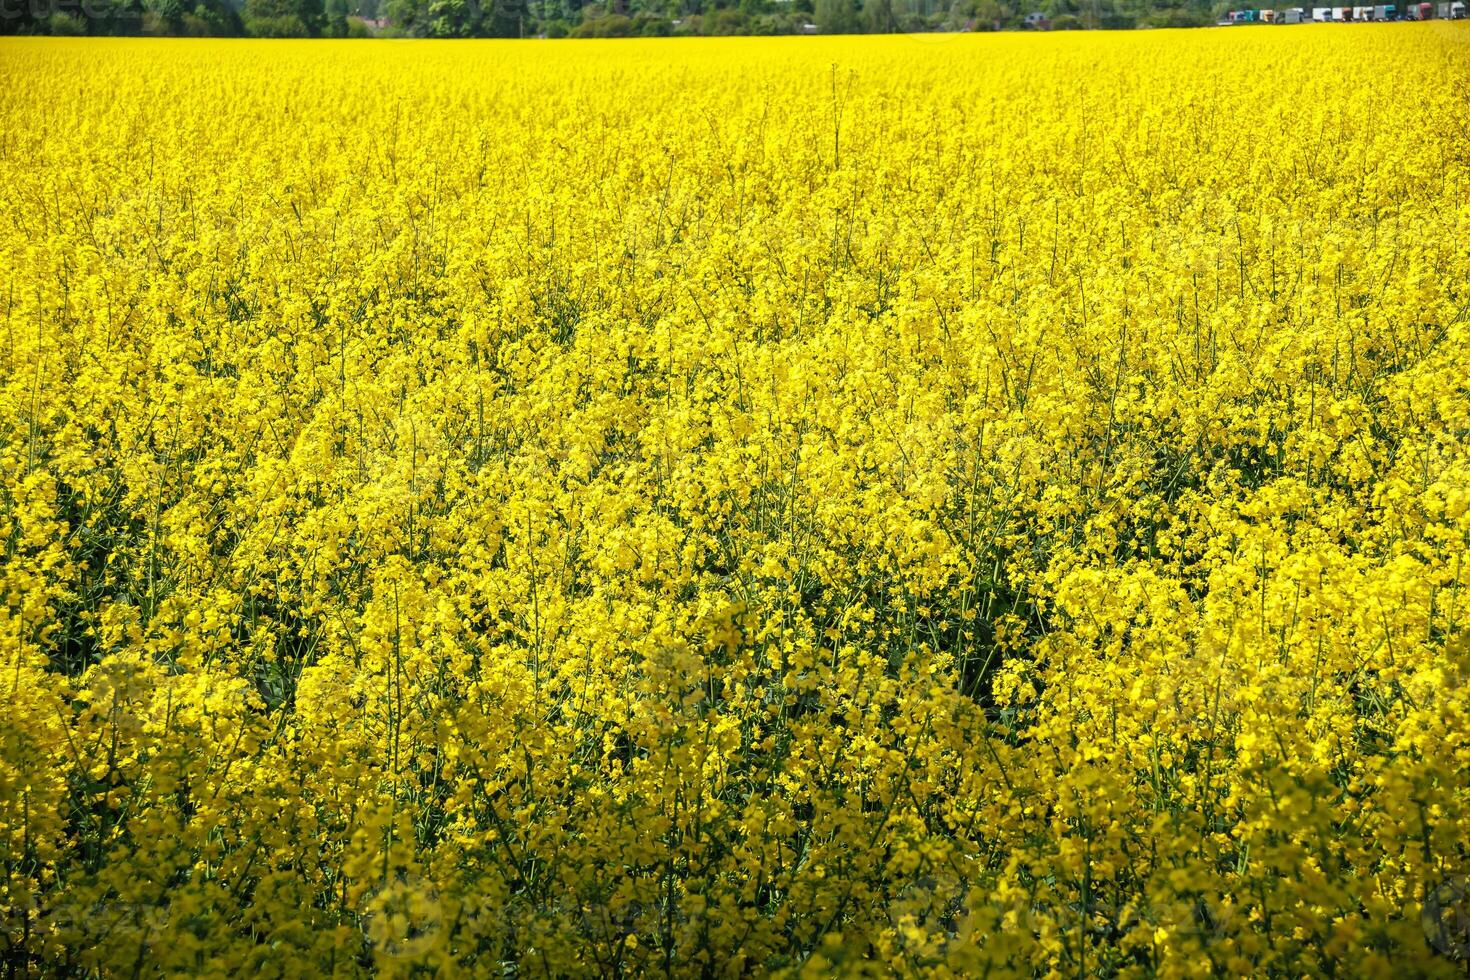 campo do lindo primavera dourado flor do colza com azul céu, canola colza dentro latim brassica napus, colza é plantar para verde indústria foto